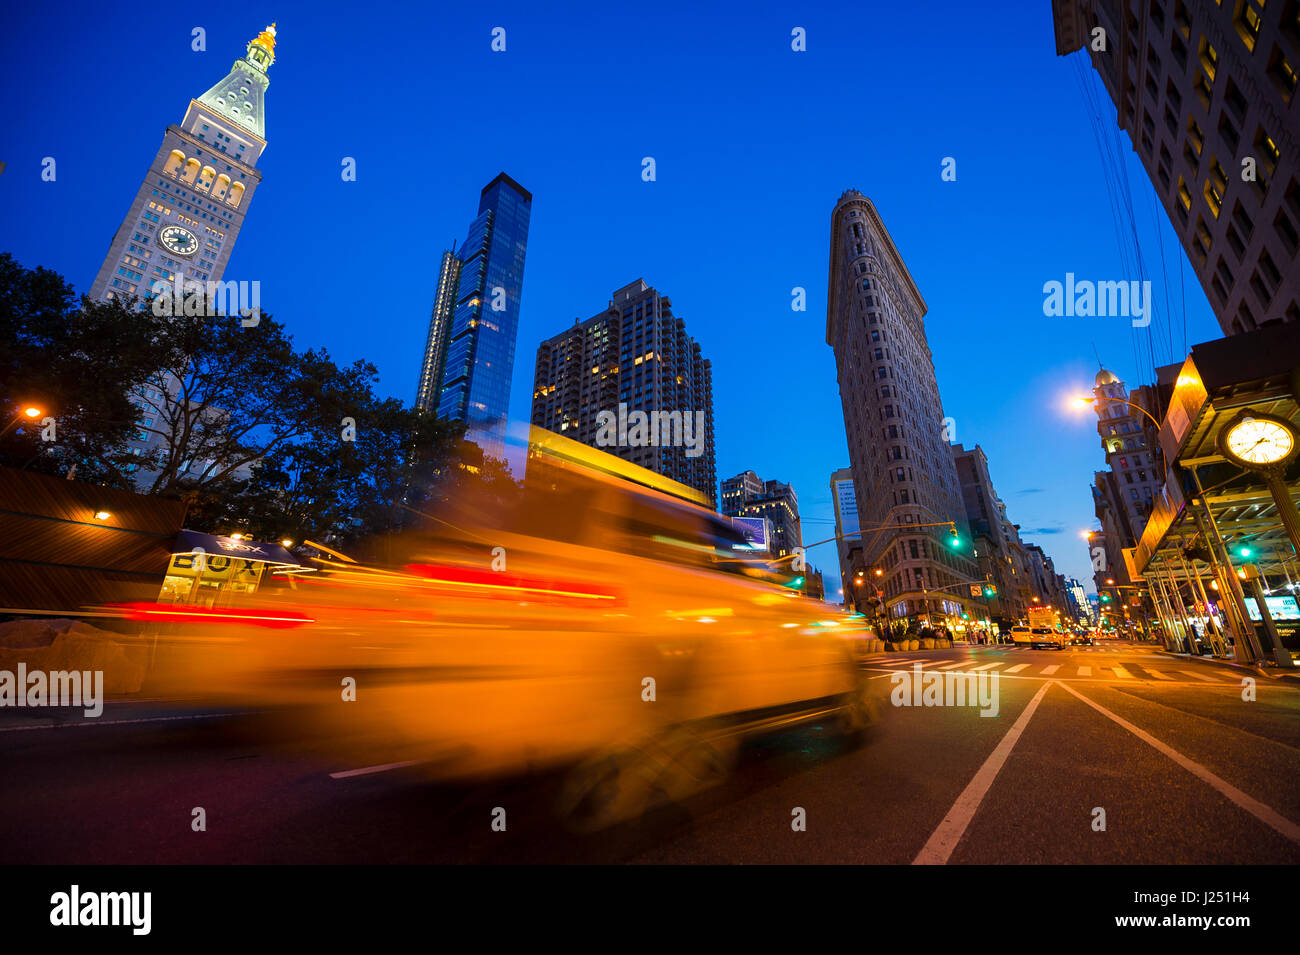 Datenverkehr in Bewegung verwischen in hellen Abend Blick auf die Straßen von New York City im Madison Square, Fifth Avenue und Broadway Schnittpunkt Stockfoto